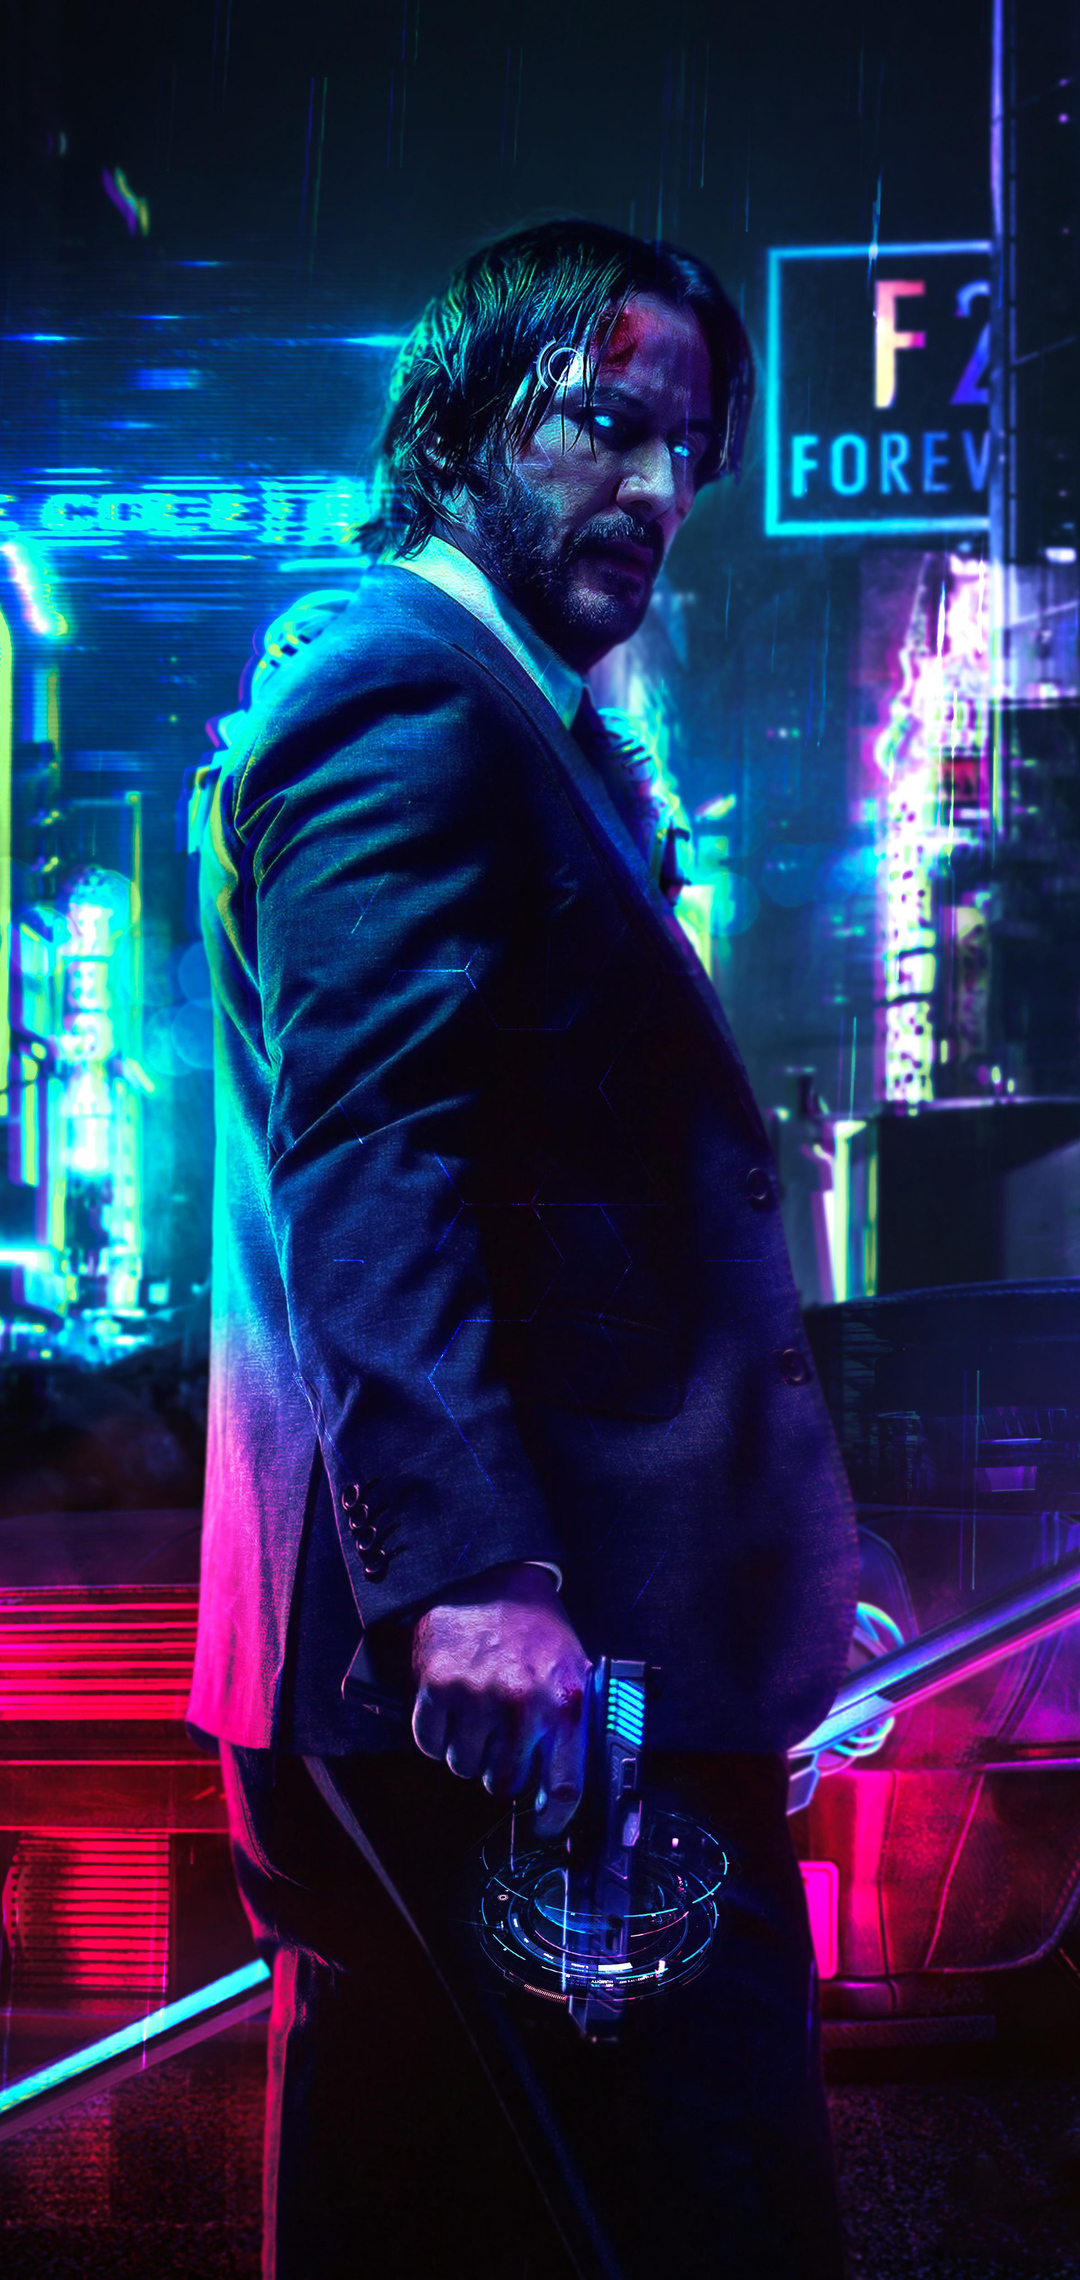 Keanu Reeves Cyberpunk 2077 FanArt. Mobile Wallpaper Mobile Walls